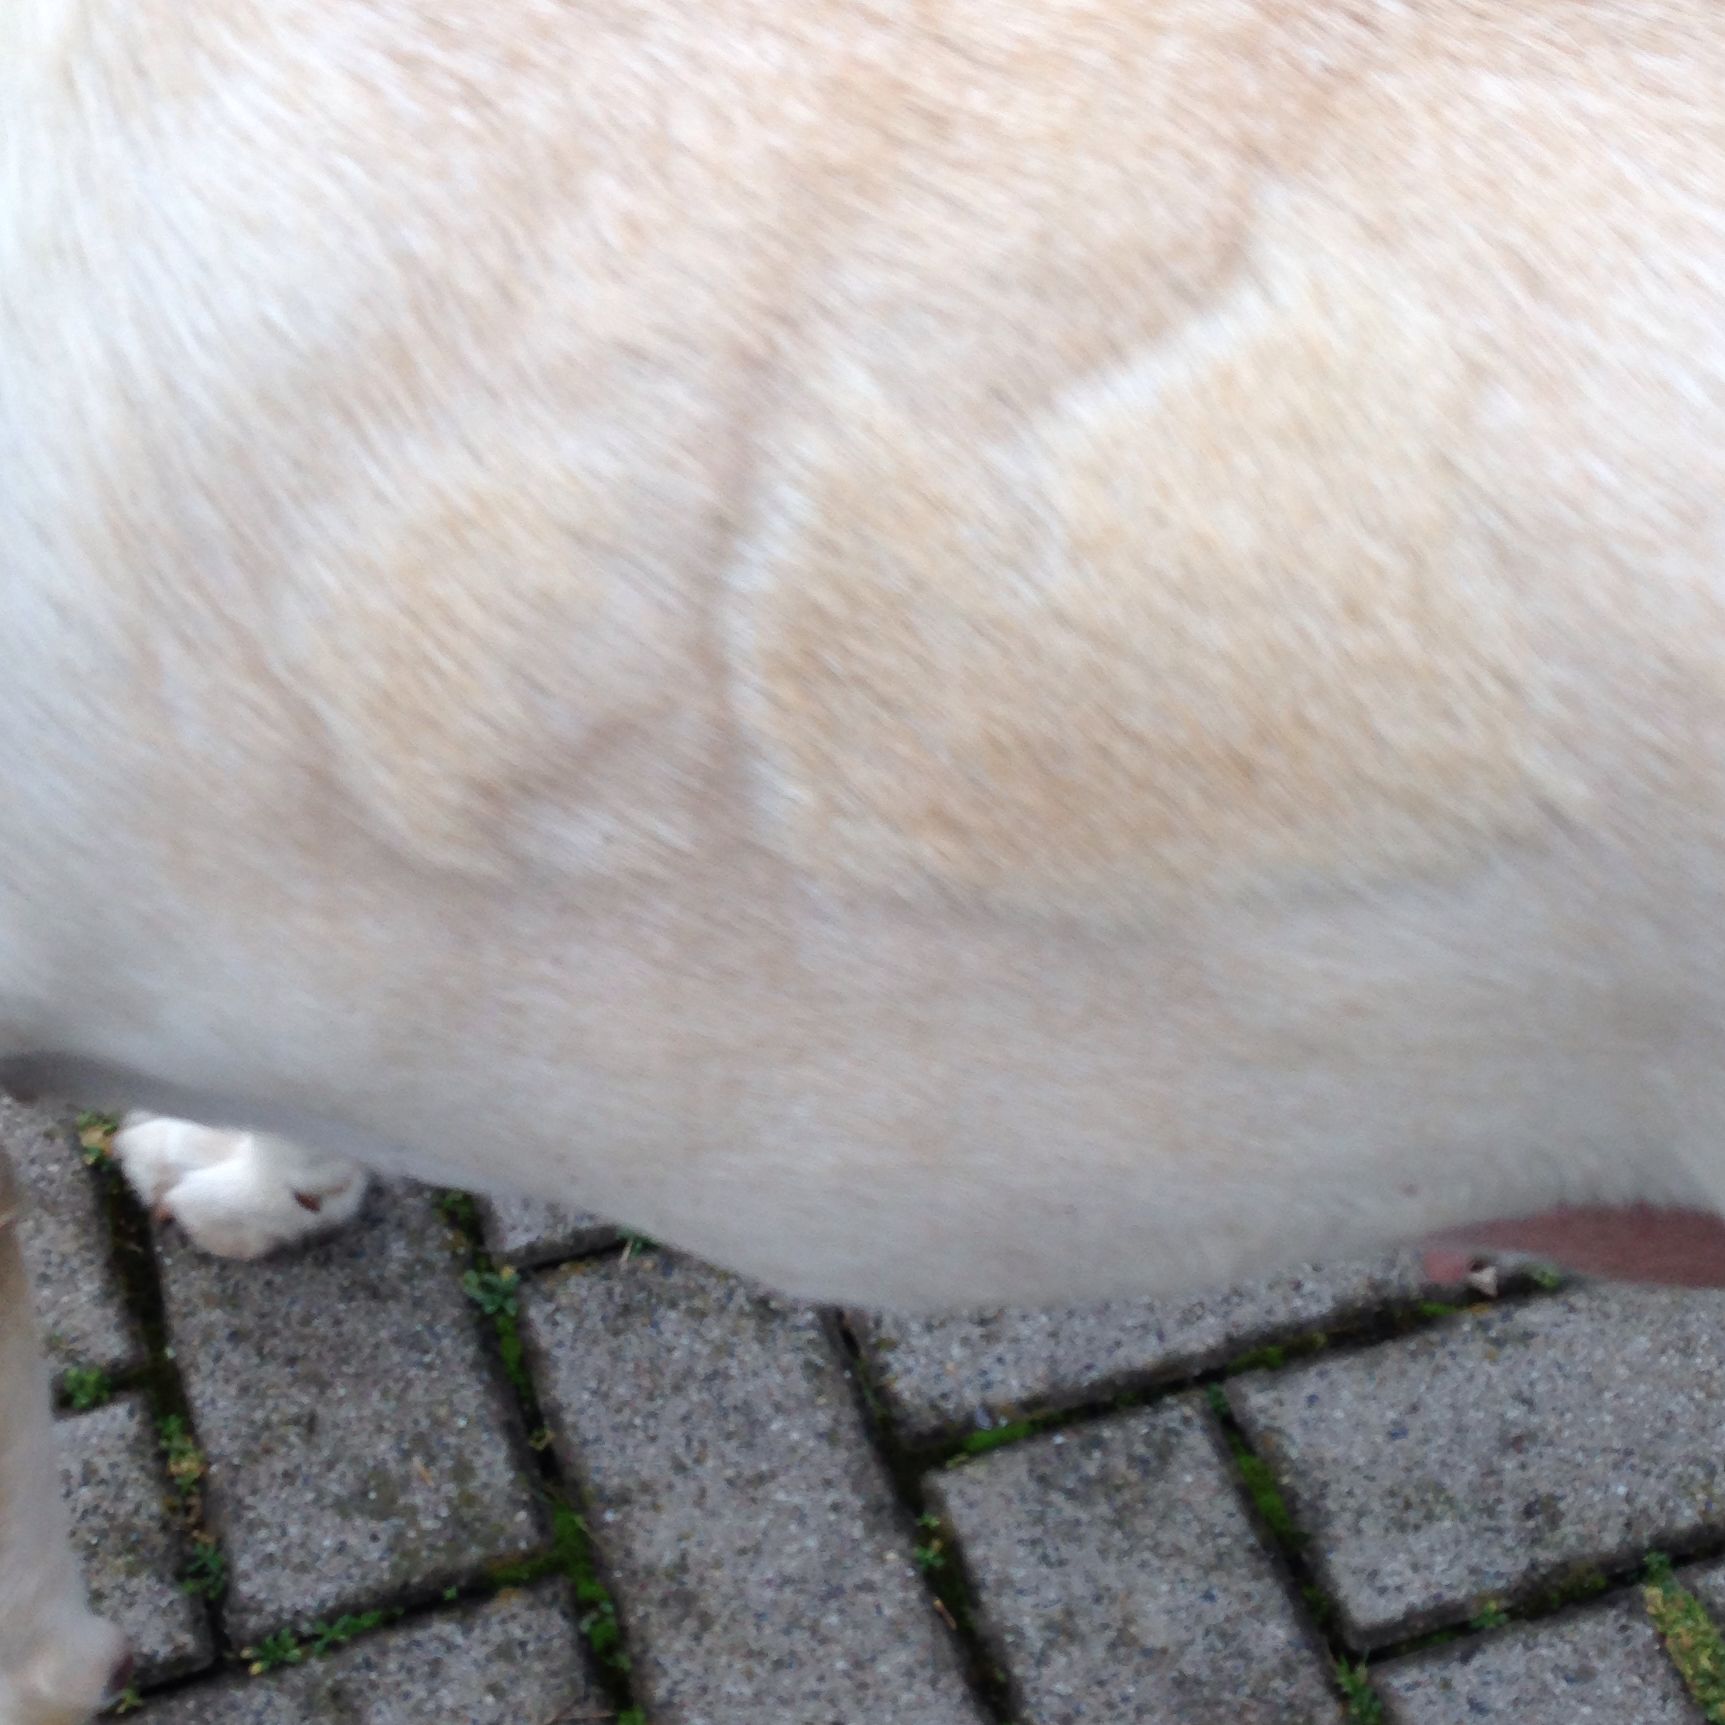 Was für komische Flecken hat mein Hund auf dem Fell? (Tiere, Haustiere)